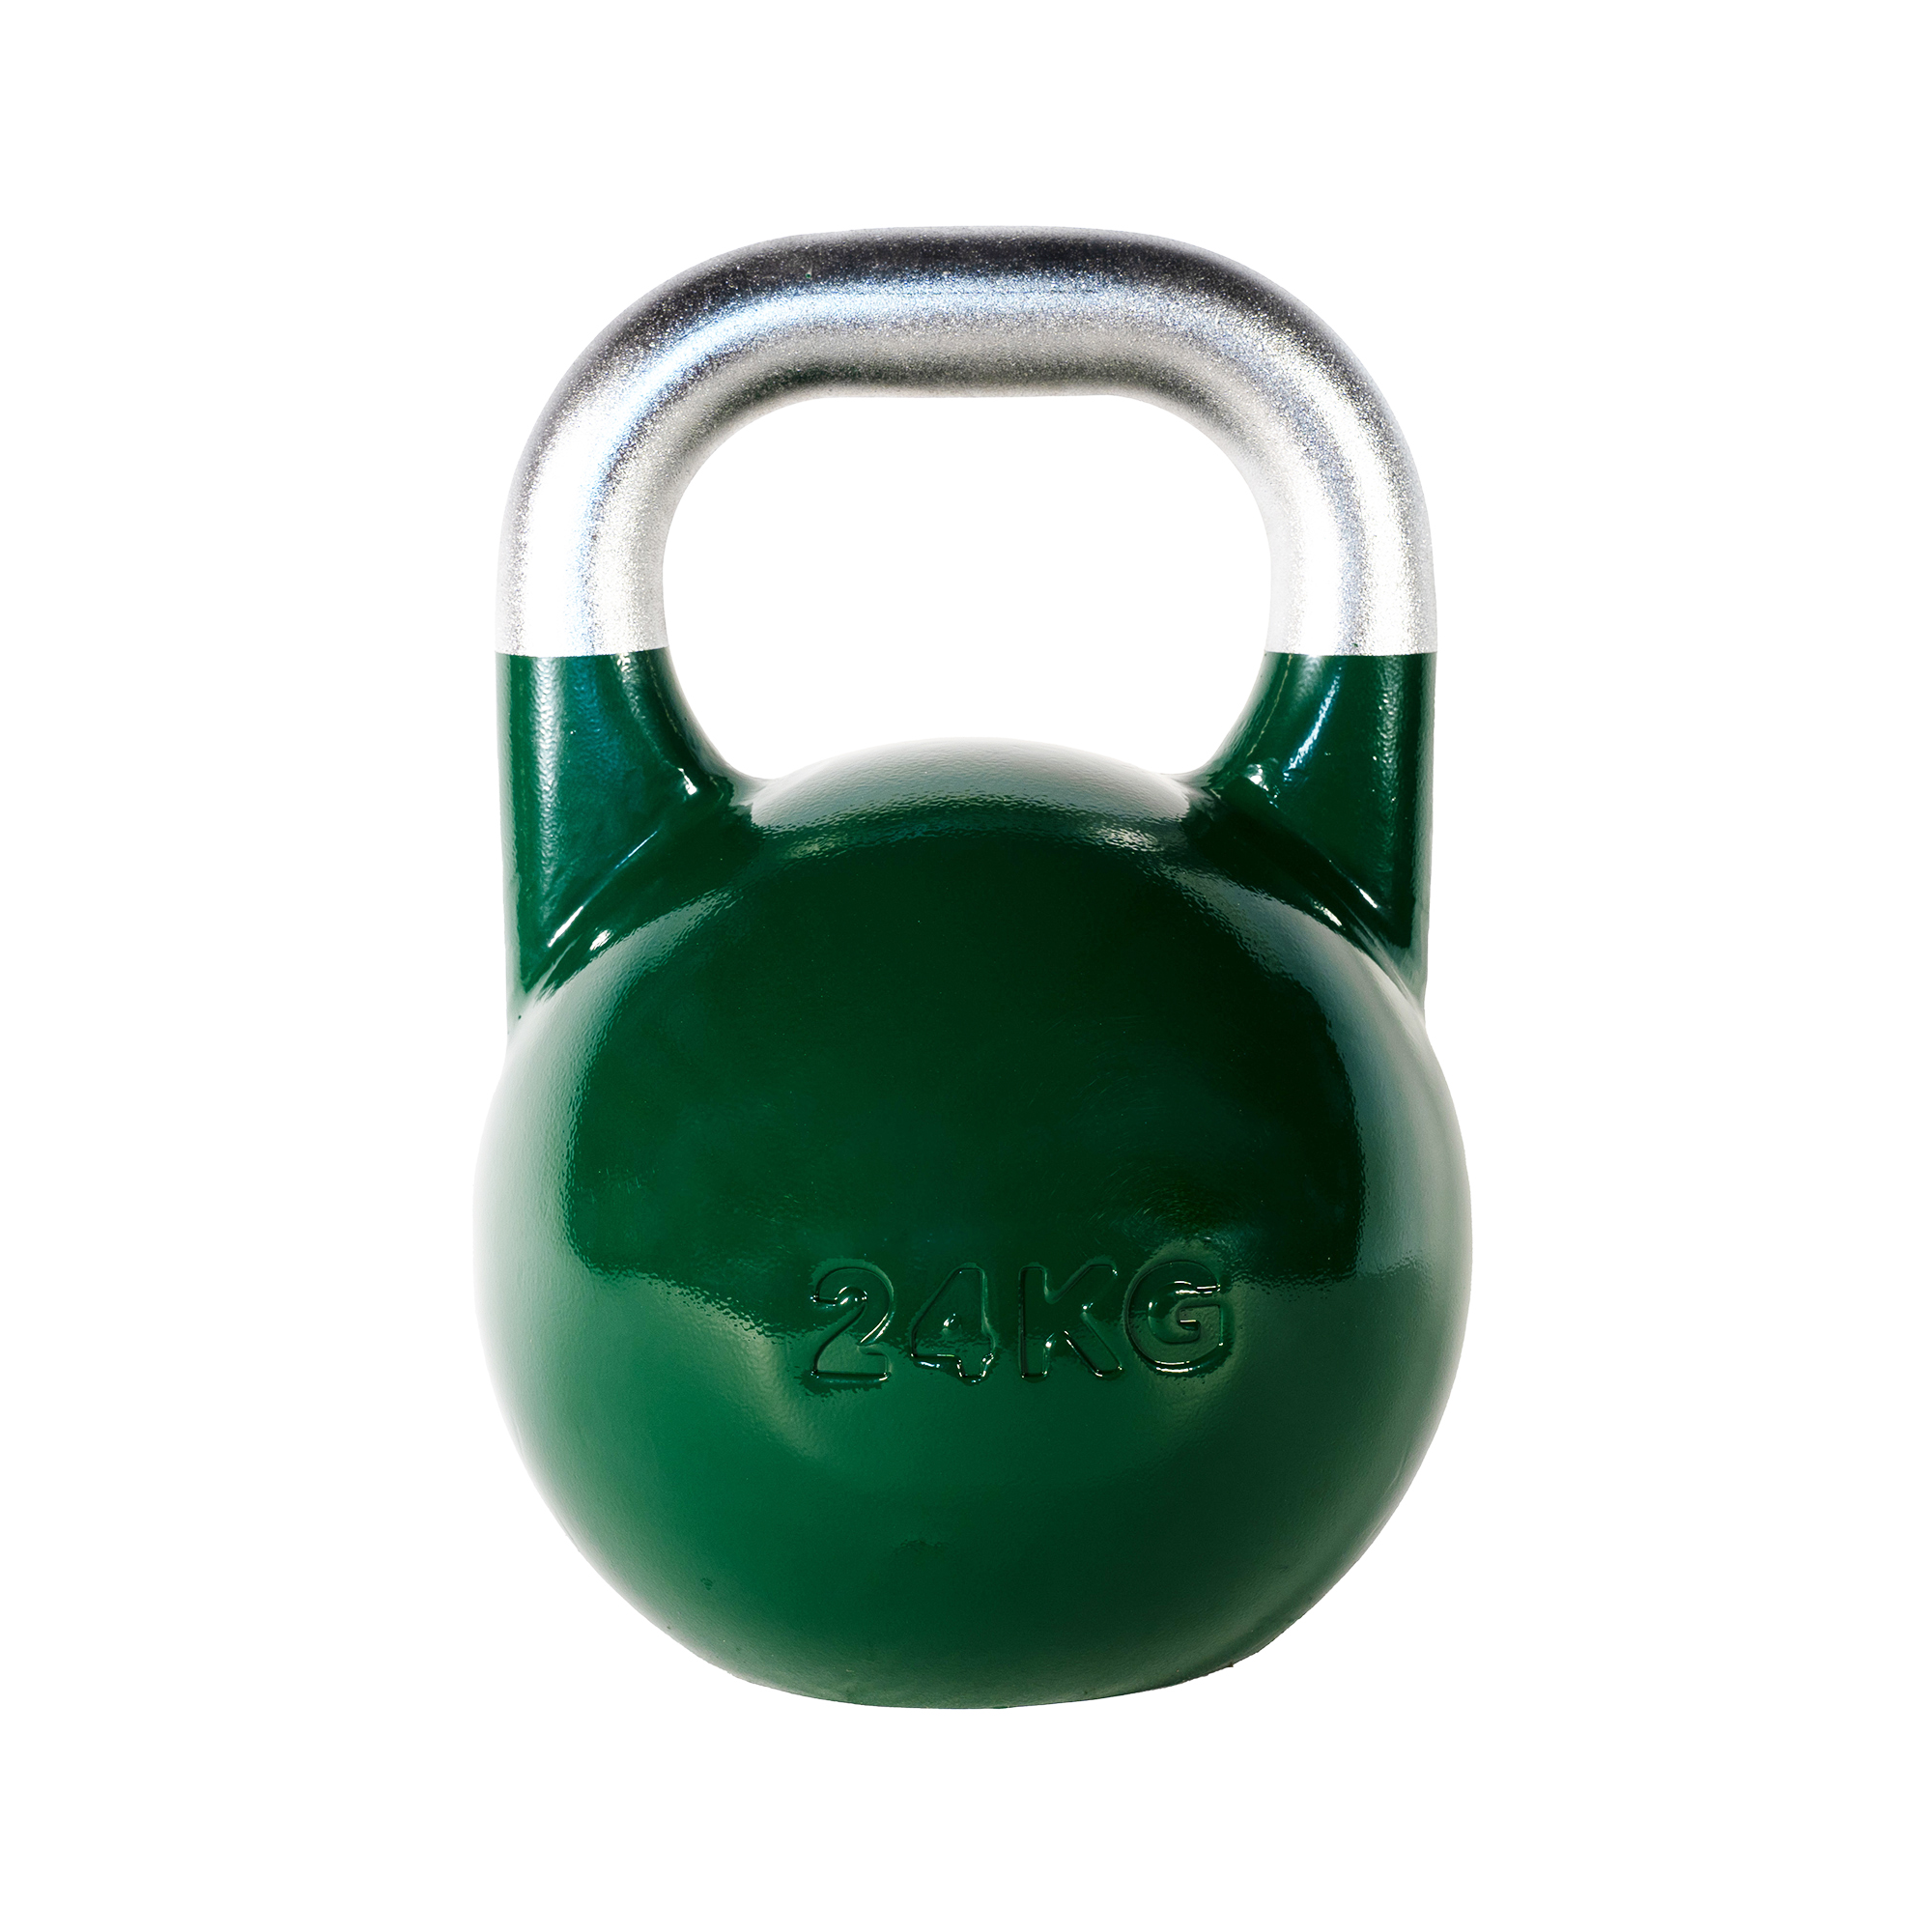 Brug SQ&SN Competition Kettlebell (24 kg) i støbejern. Udstyr til crossfit træning, styrketræning og funktionel træning til en forbedret oplevelse